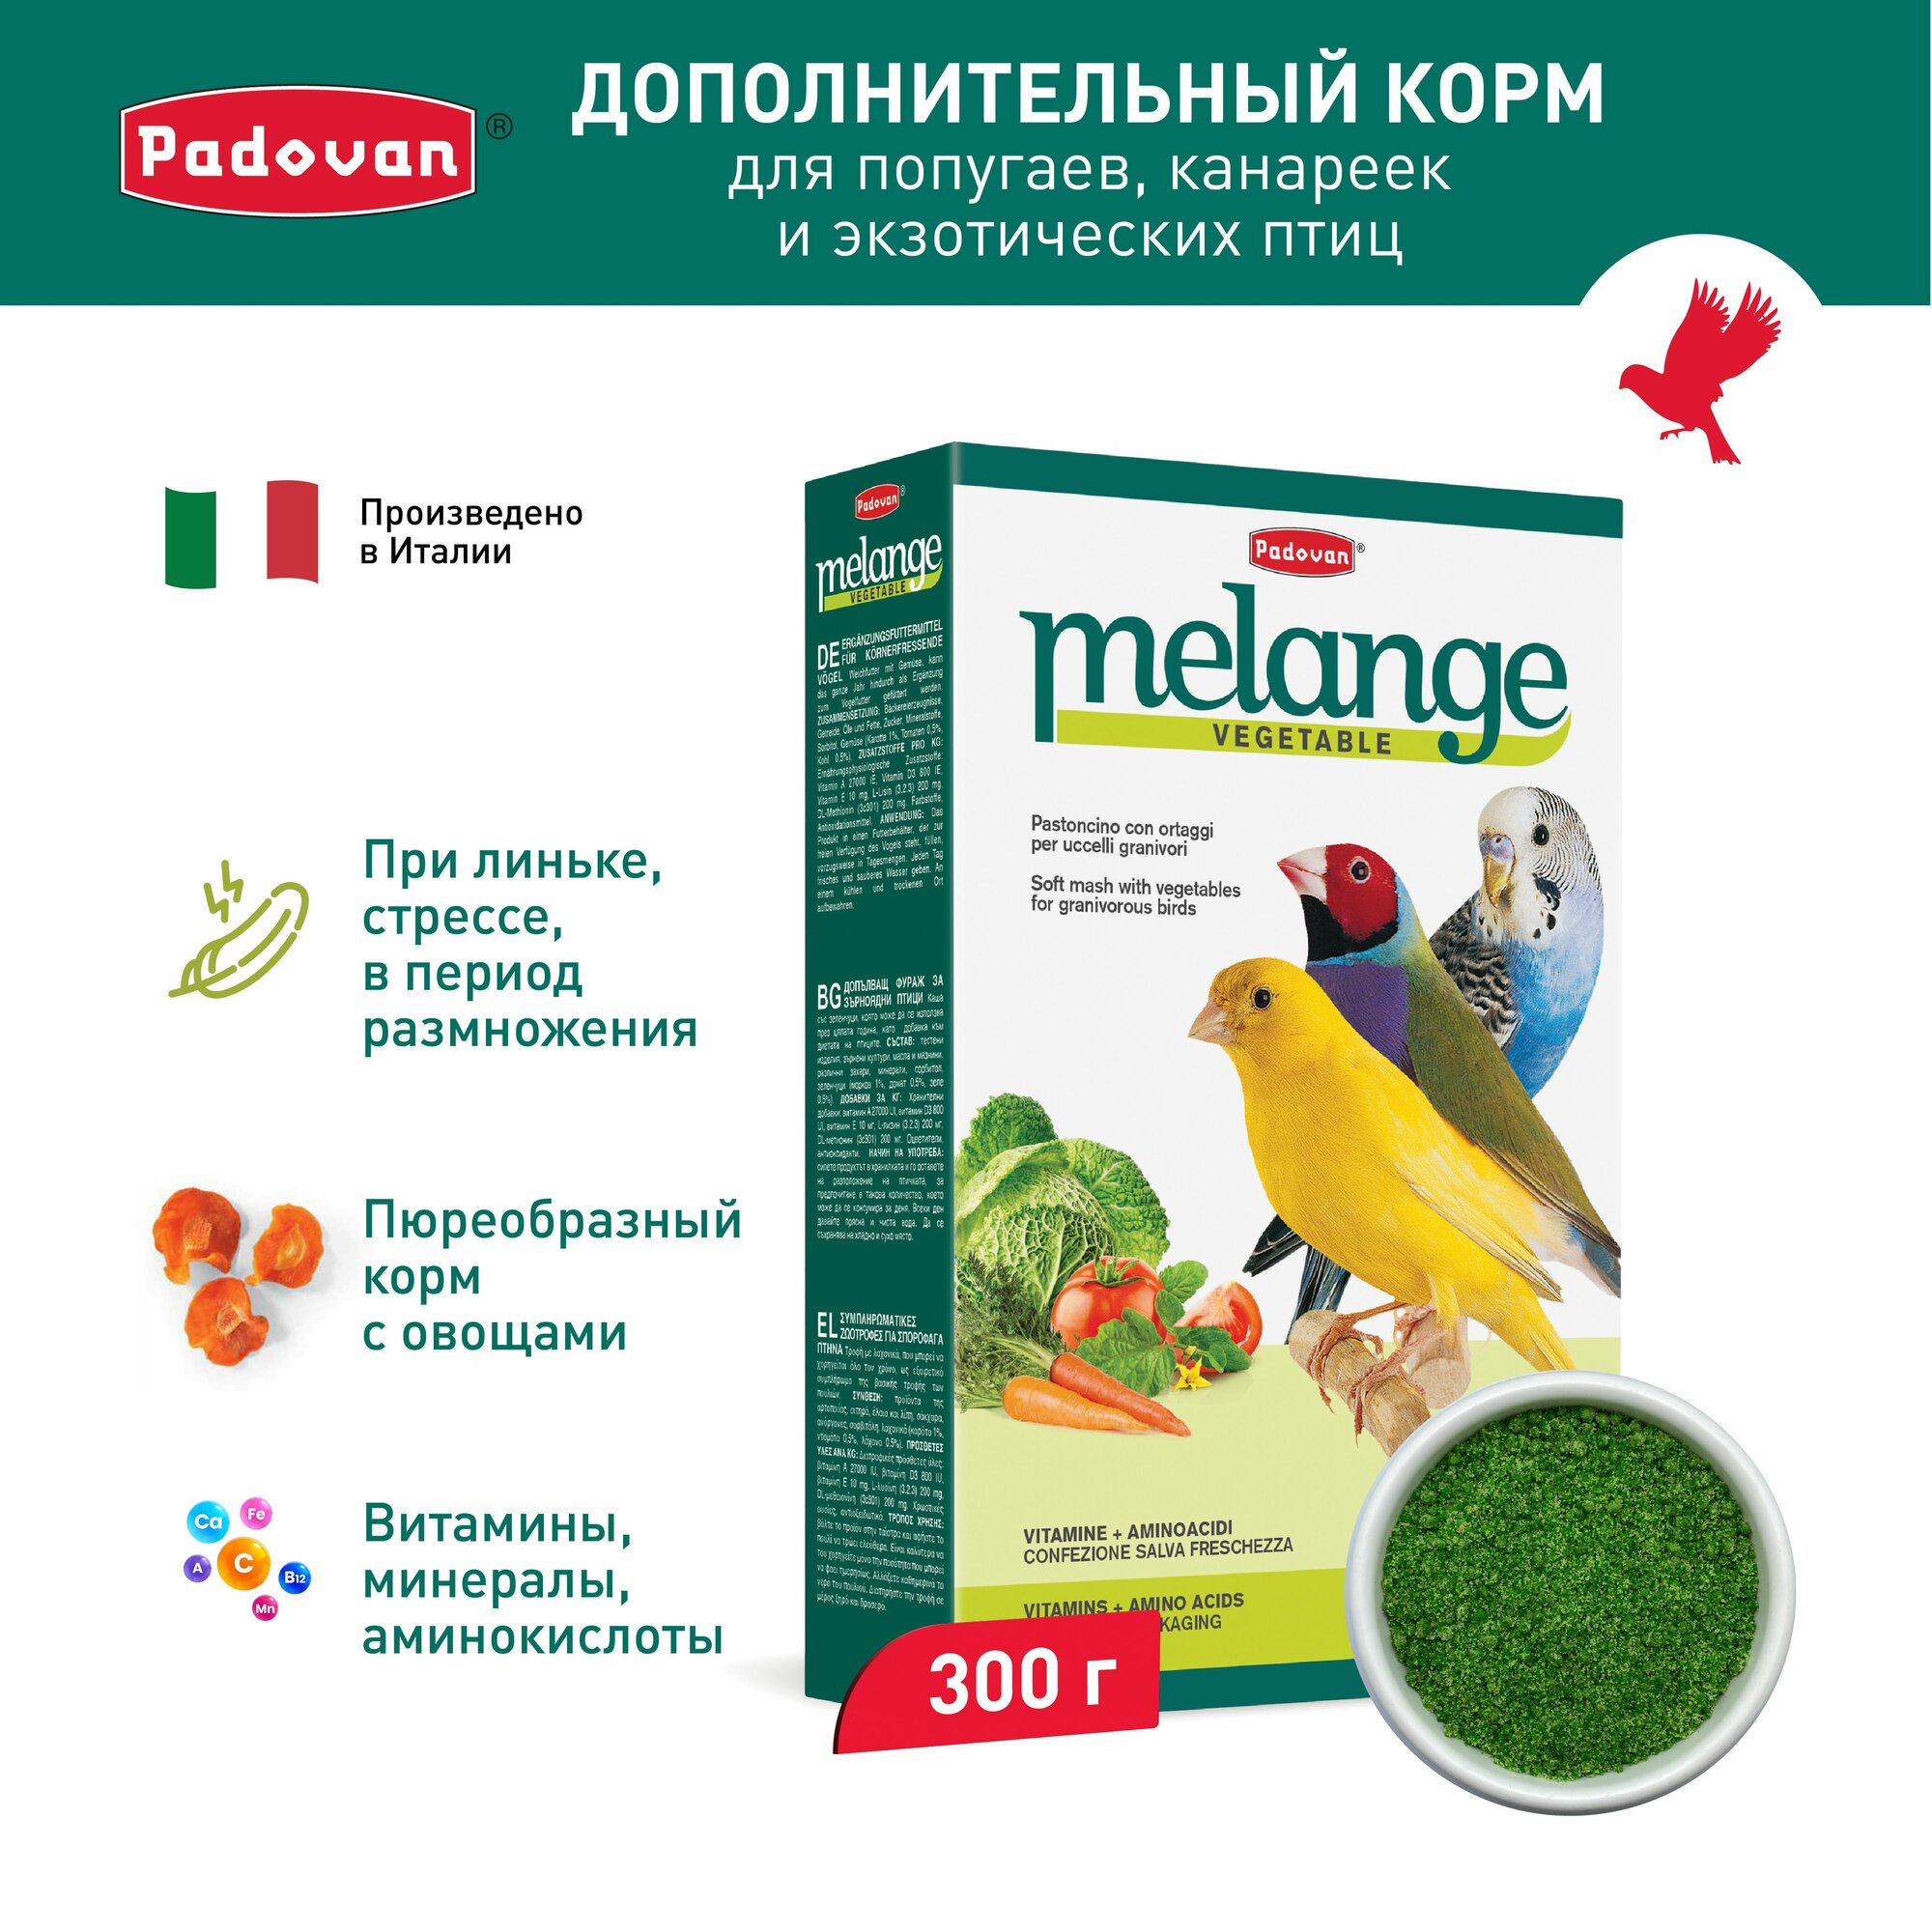 Корм для декоративных птиц дополнительный Padovan Melange Vegetable (300г)